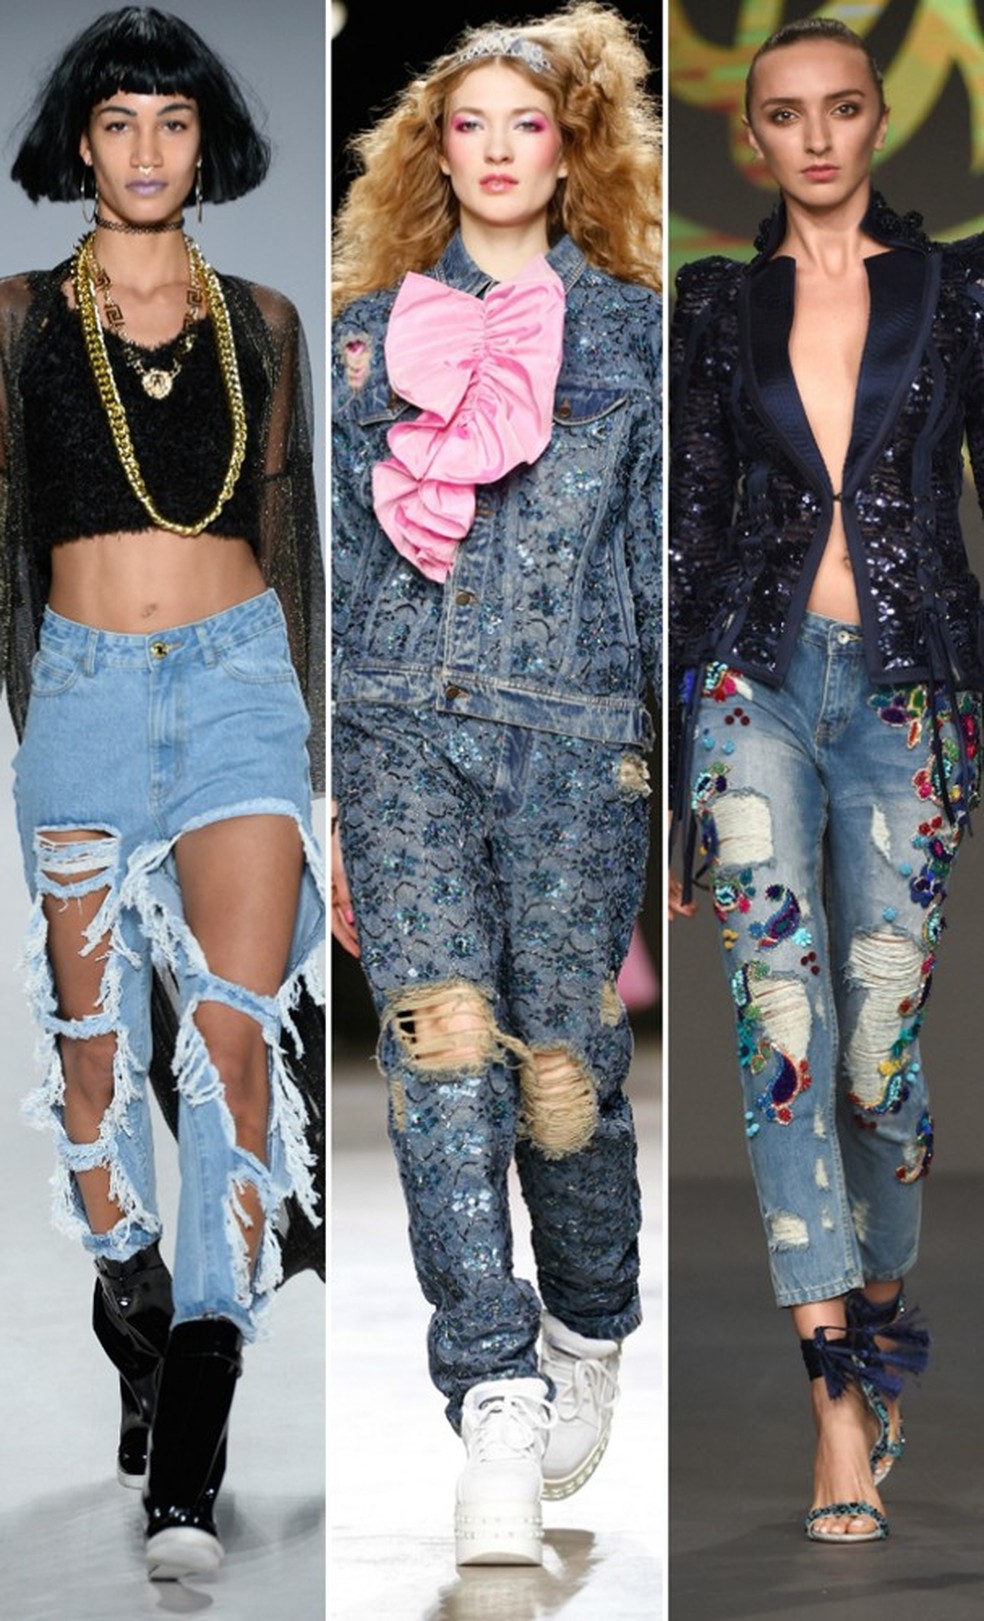 Direto das passarelas: Fig & Viper, Ashish e Soltana foram algumas das marcas que rasgaram o jeans nas semanas de moda - ora inventaram no acabamento do rasgo, ora abusaram de aplicações no jeans pra dar mais bossa à tendência (Foto: Getty Images) — Foto: Glamour